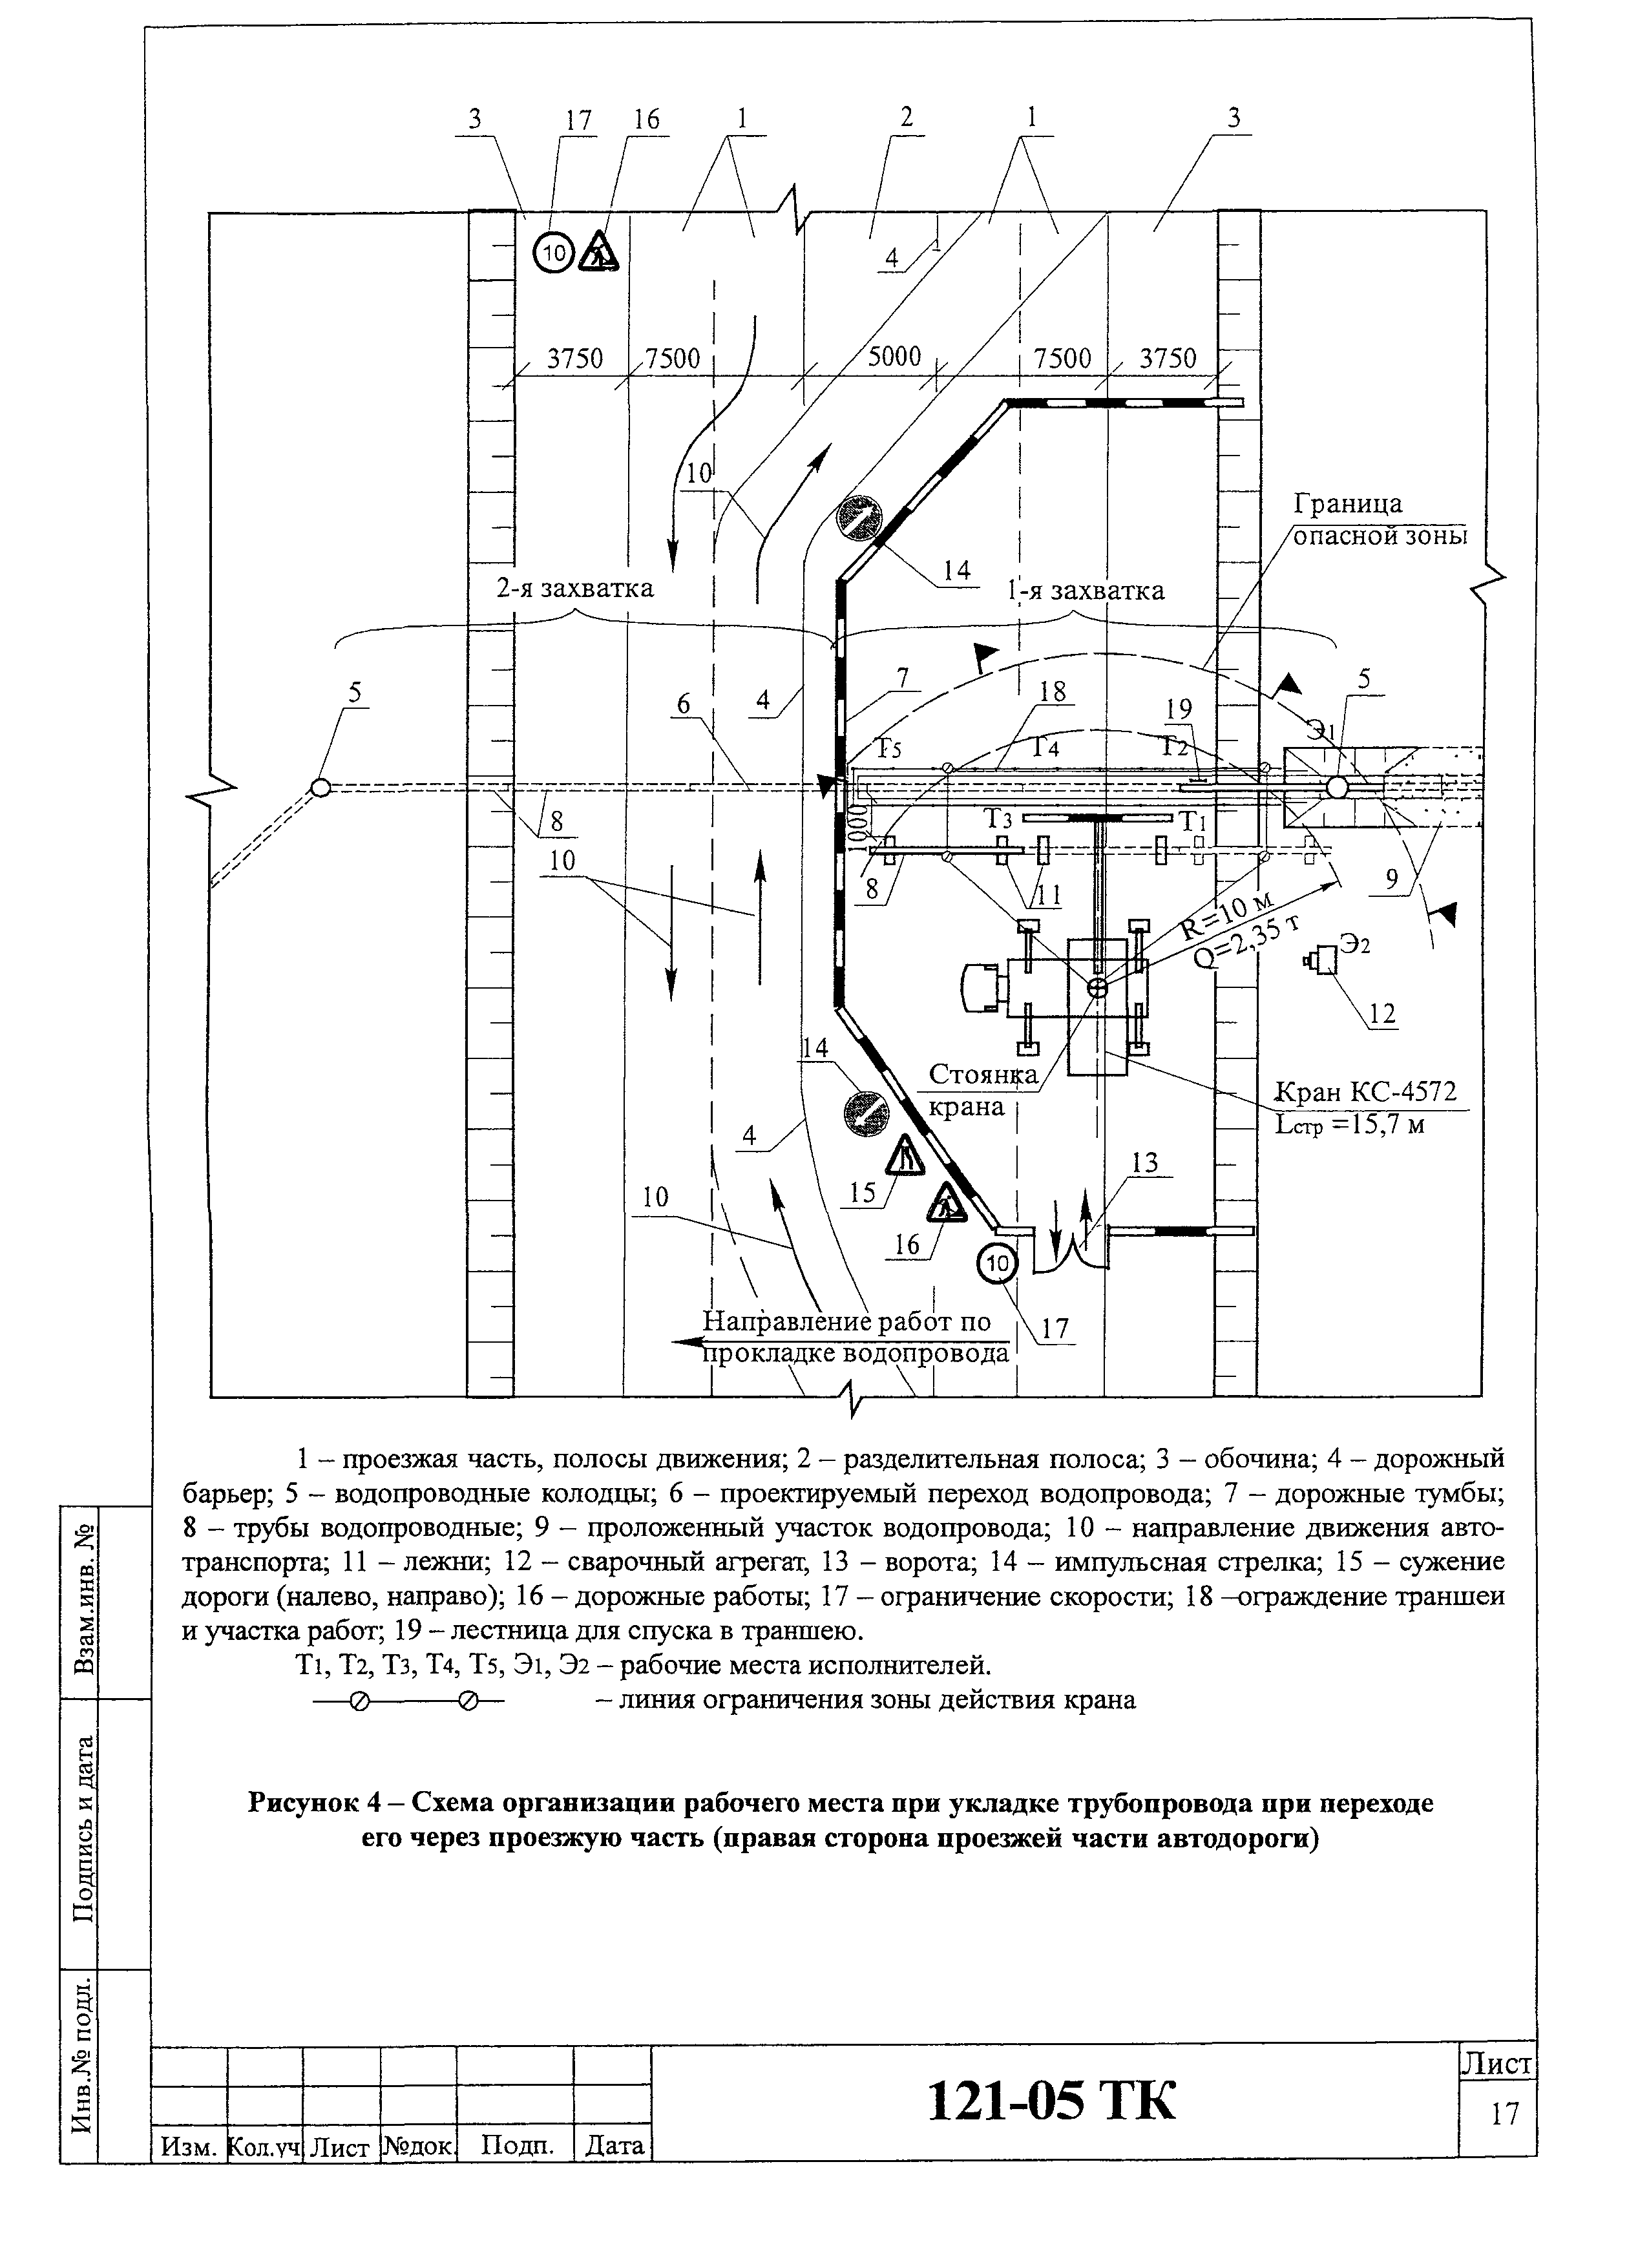 Технологическая карта 121-05 ТК